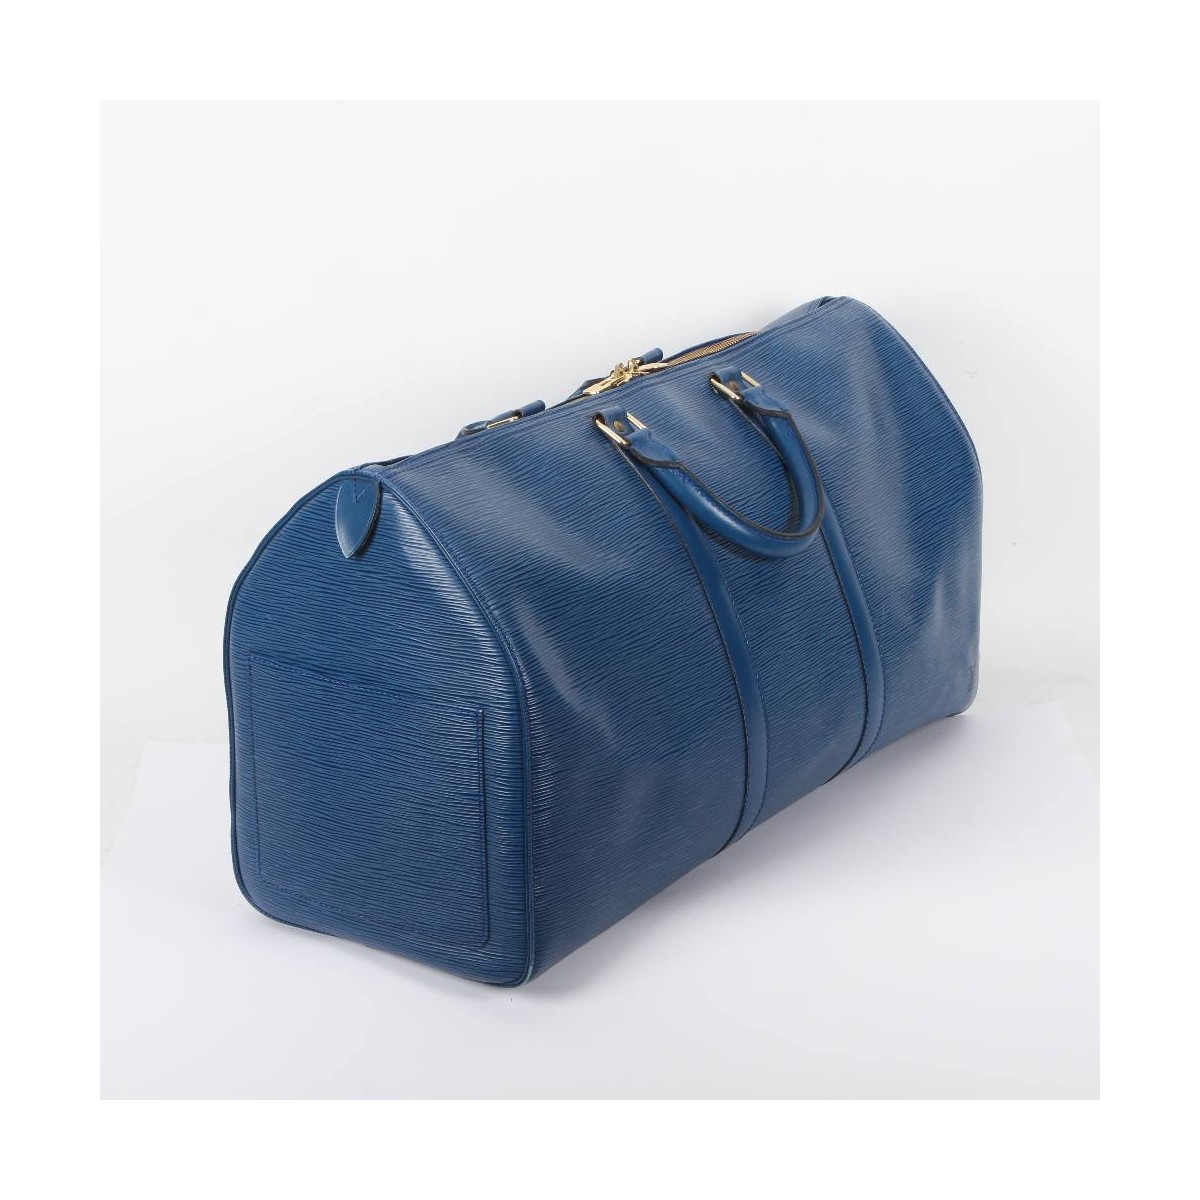 Comprar Bolso de viaje Louis Vuitton Keepall Epi azul E355256